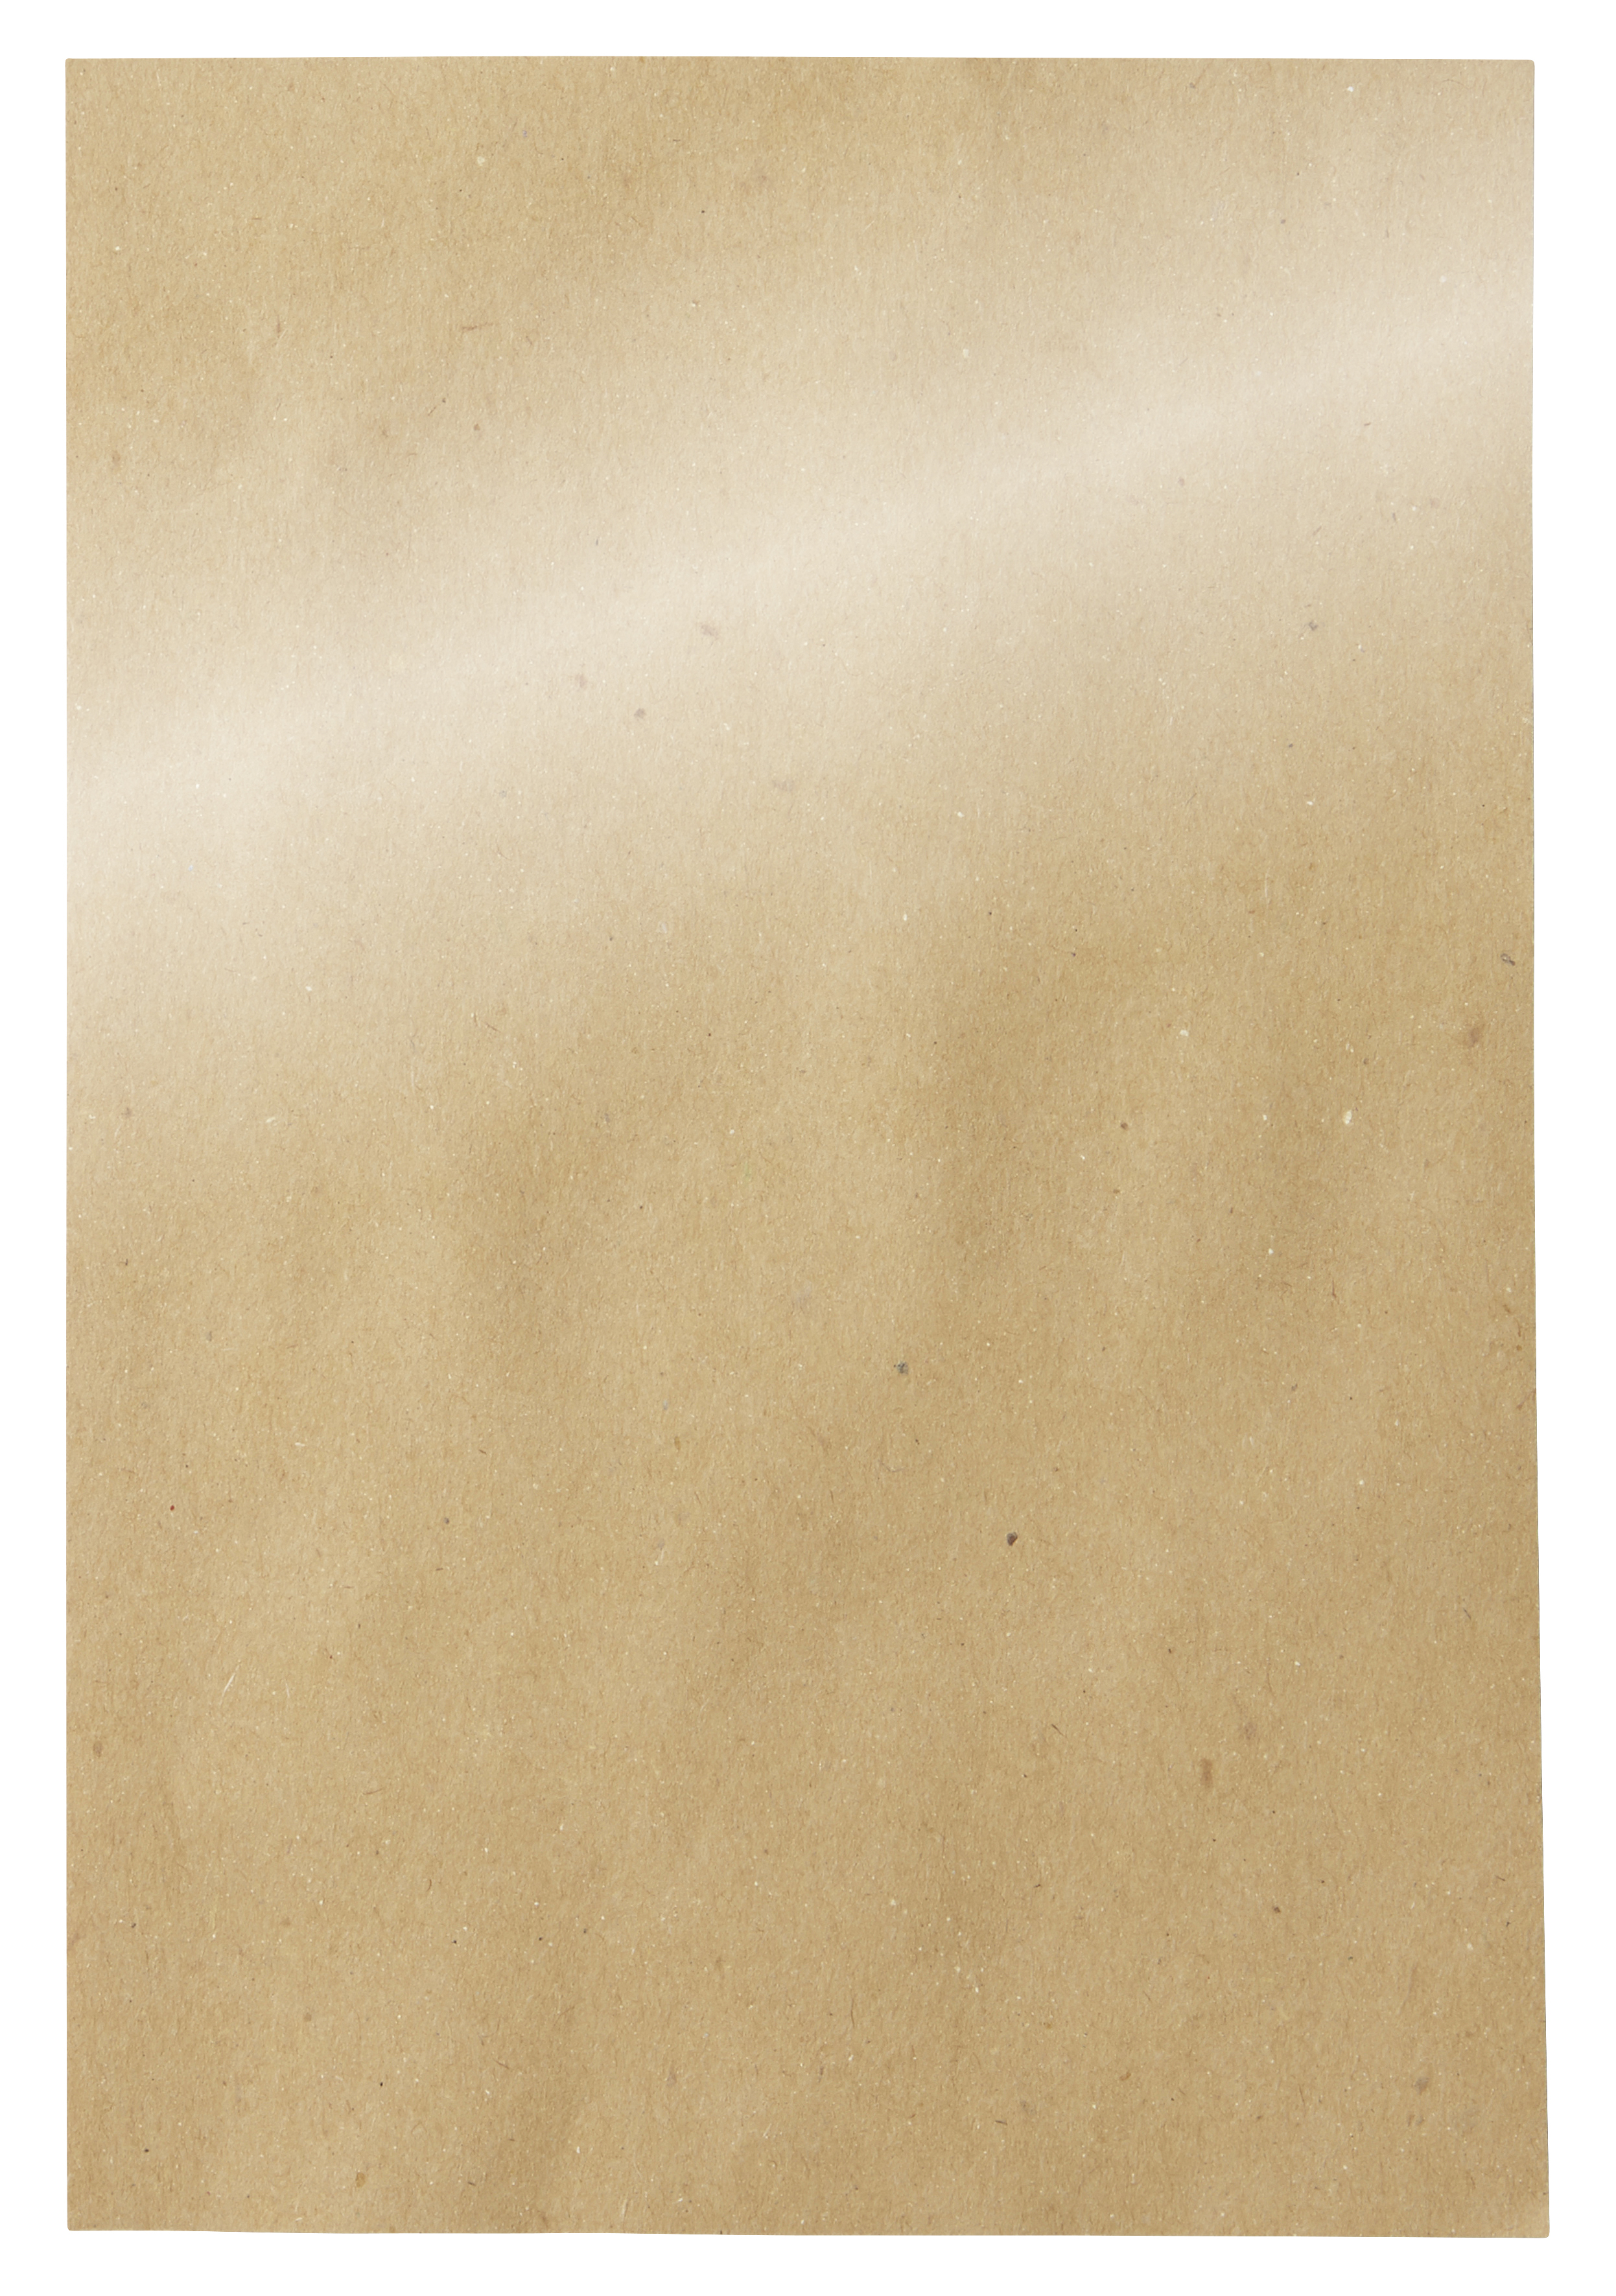 Papier-Tischsets (laminiert) , 30 x 45 cm, neutral